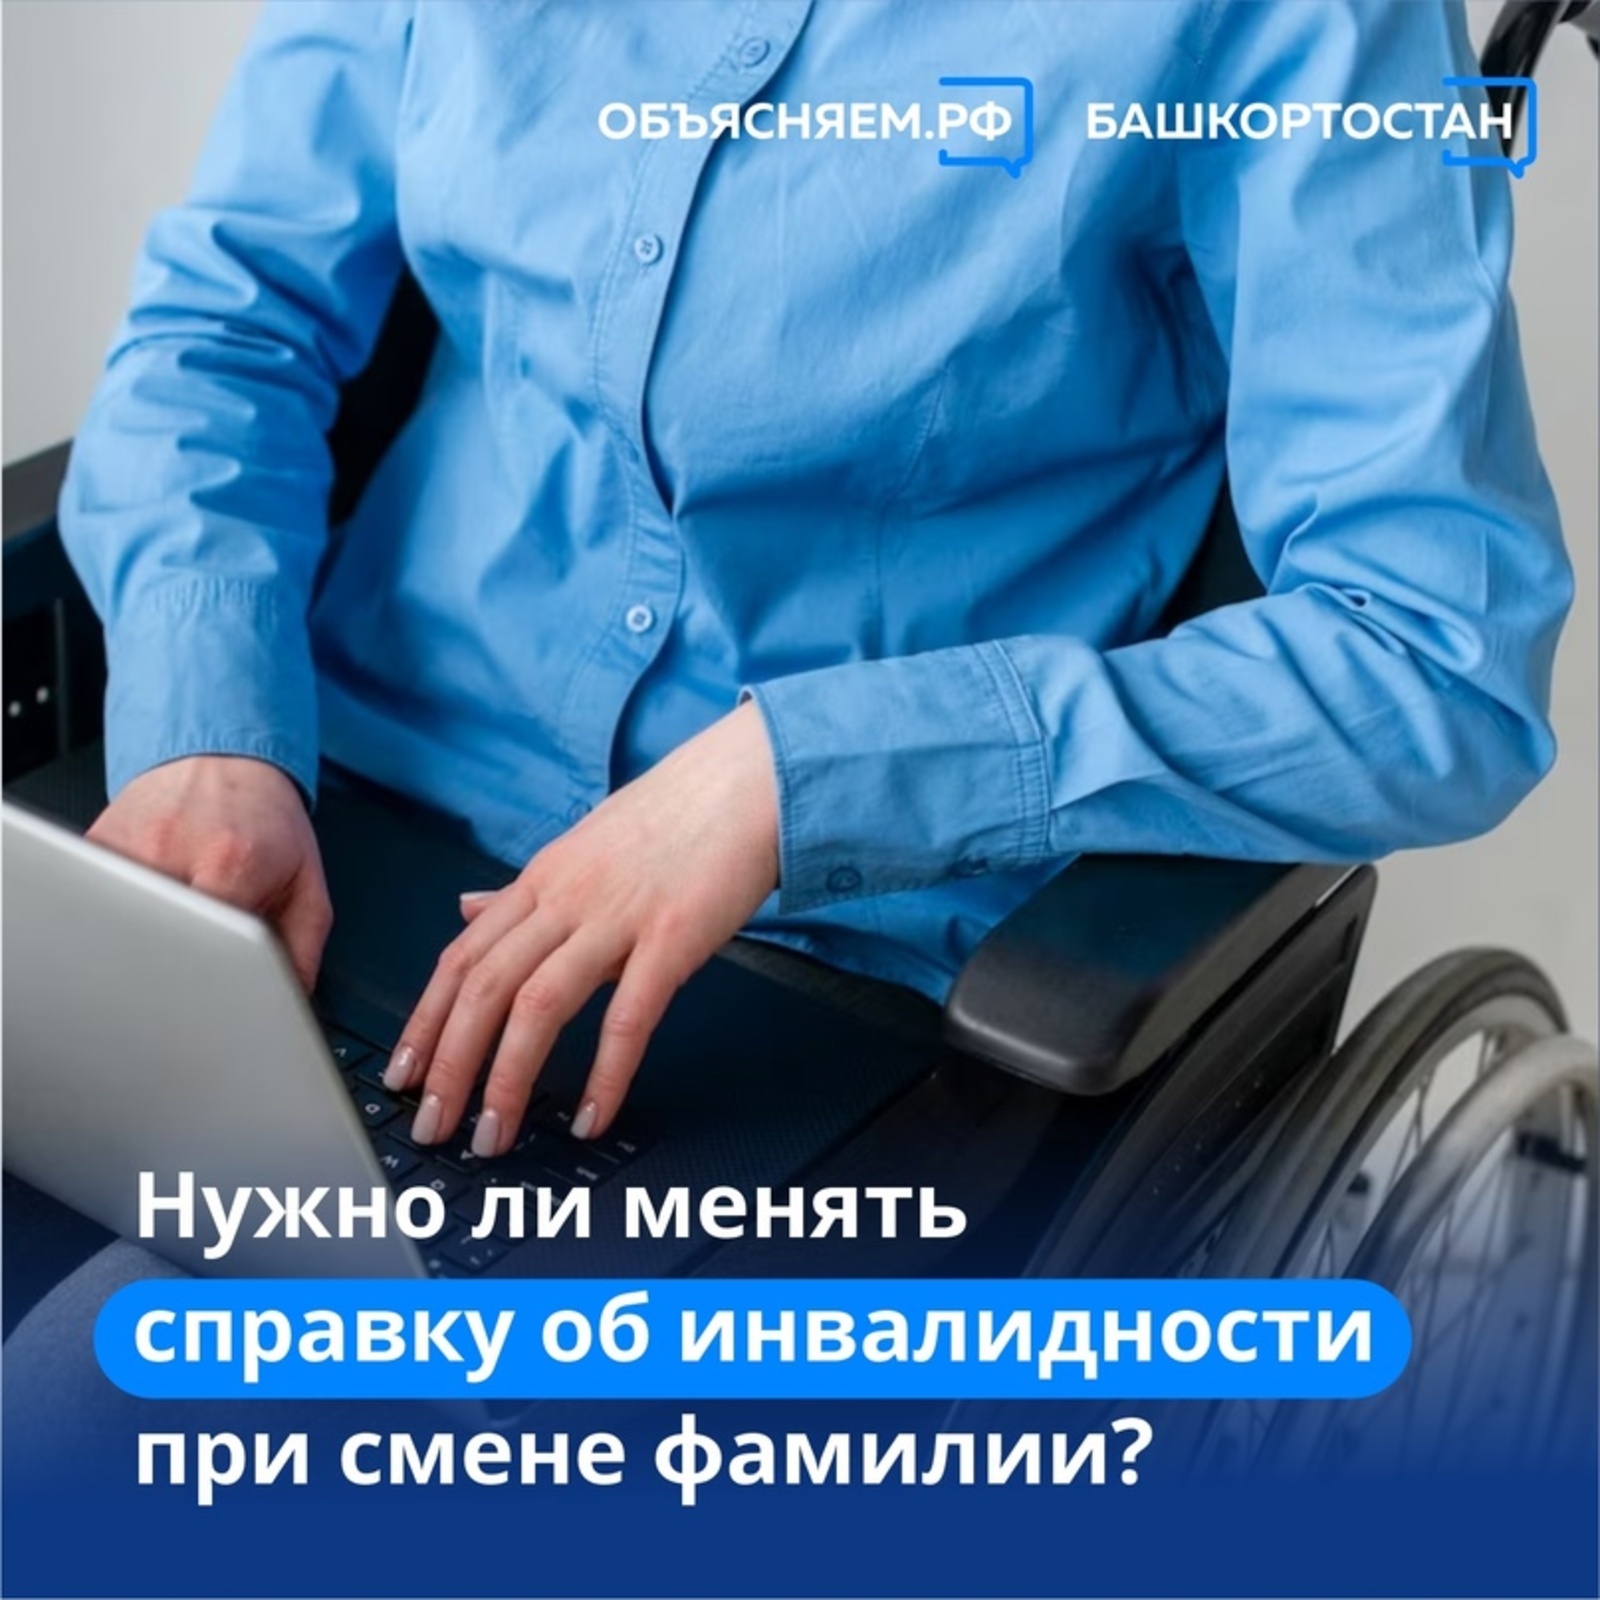 Объясняем. Башкортостан, пост: Нужно ли менять справку об инвалидности при смене фамилии?